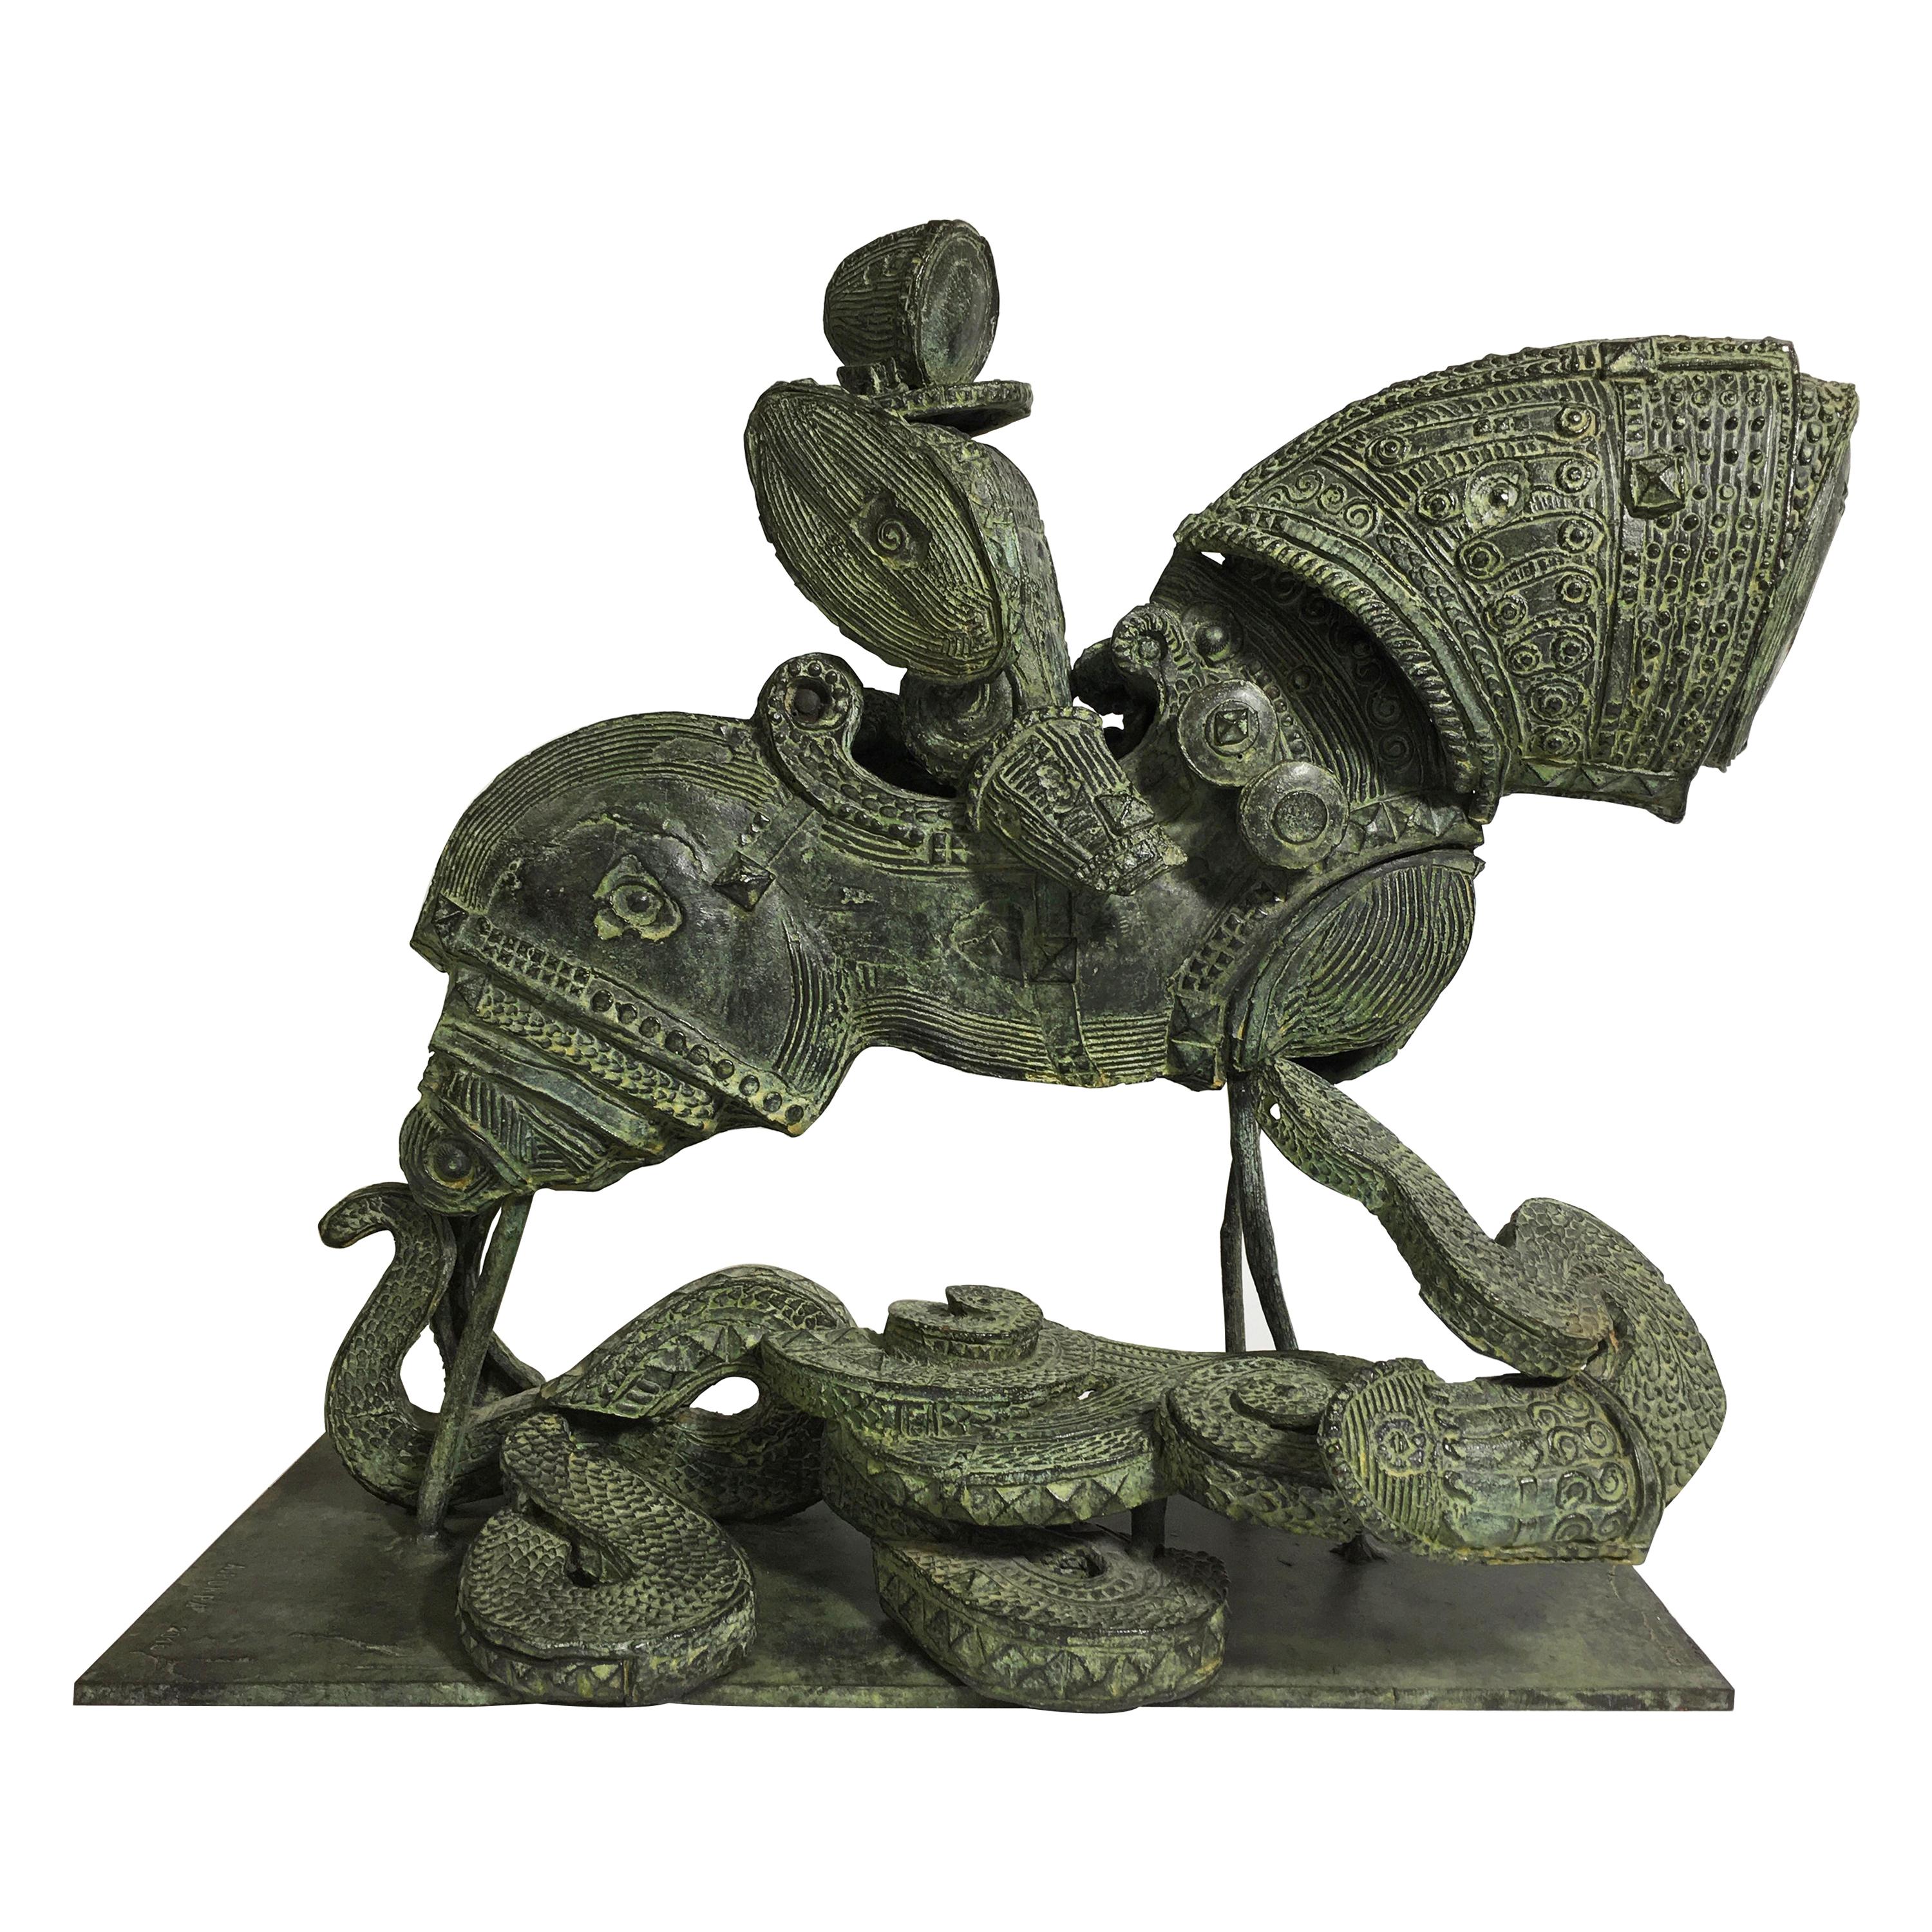 Adriano Pompa "San Giorgio and the Dragon" Bronze Sculpture